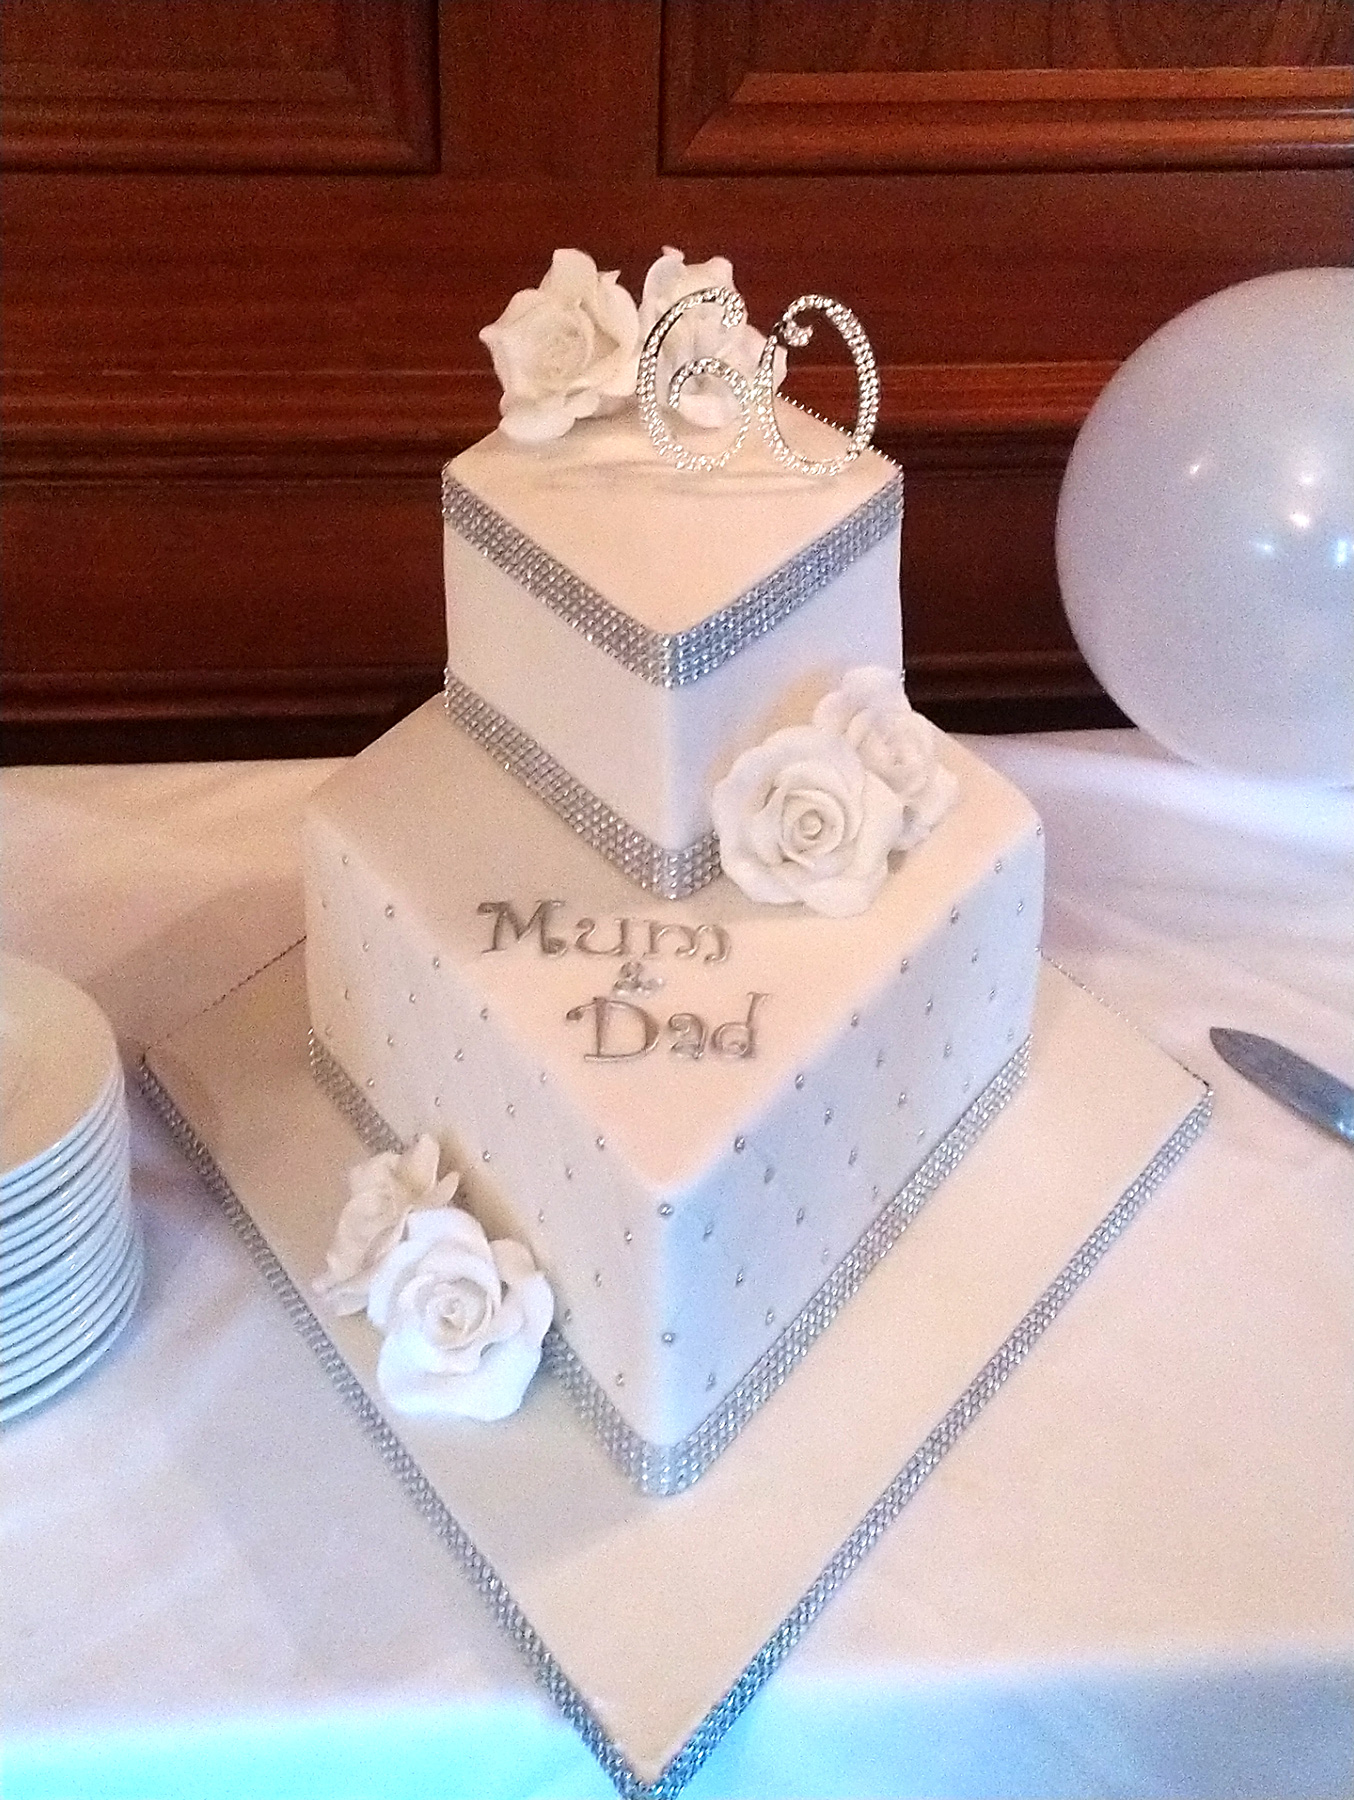 2 Tier Ruby Wedding Anniversary Cake – celticcakes.com